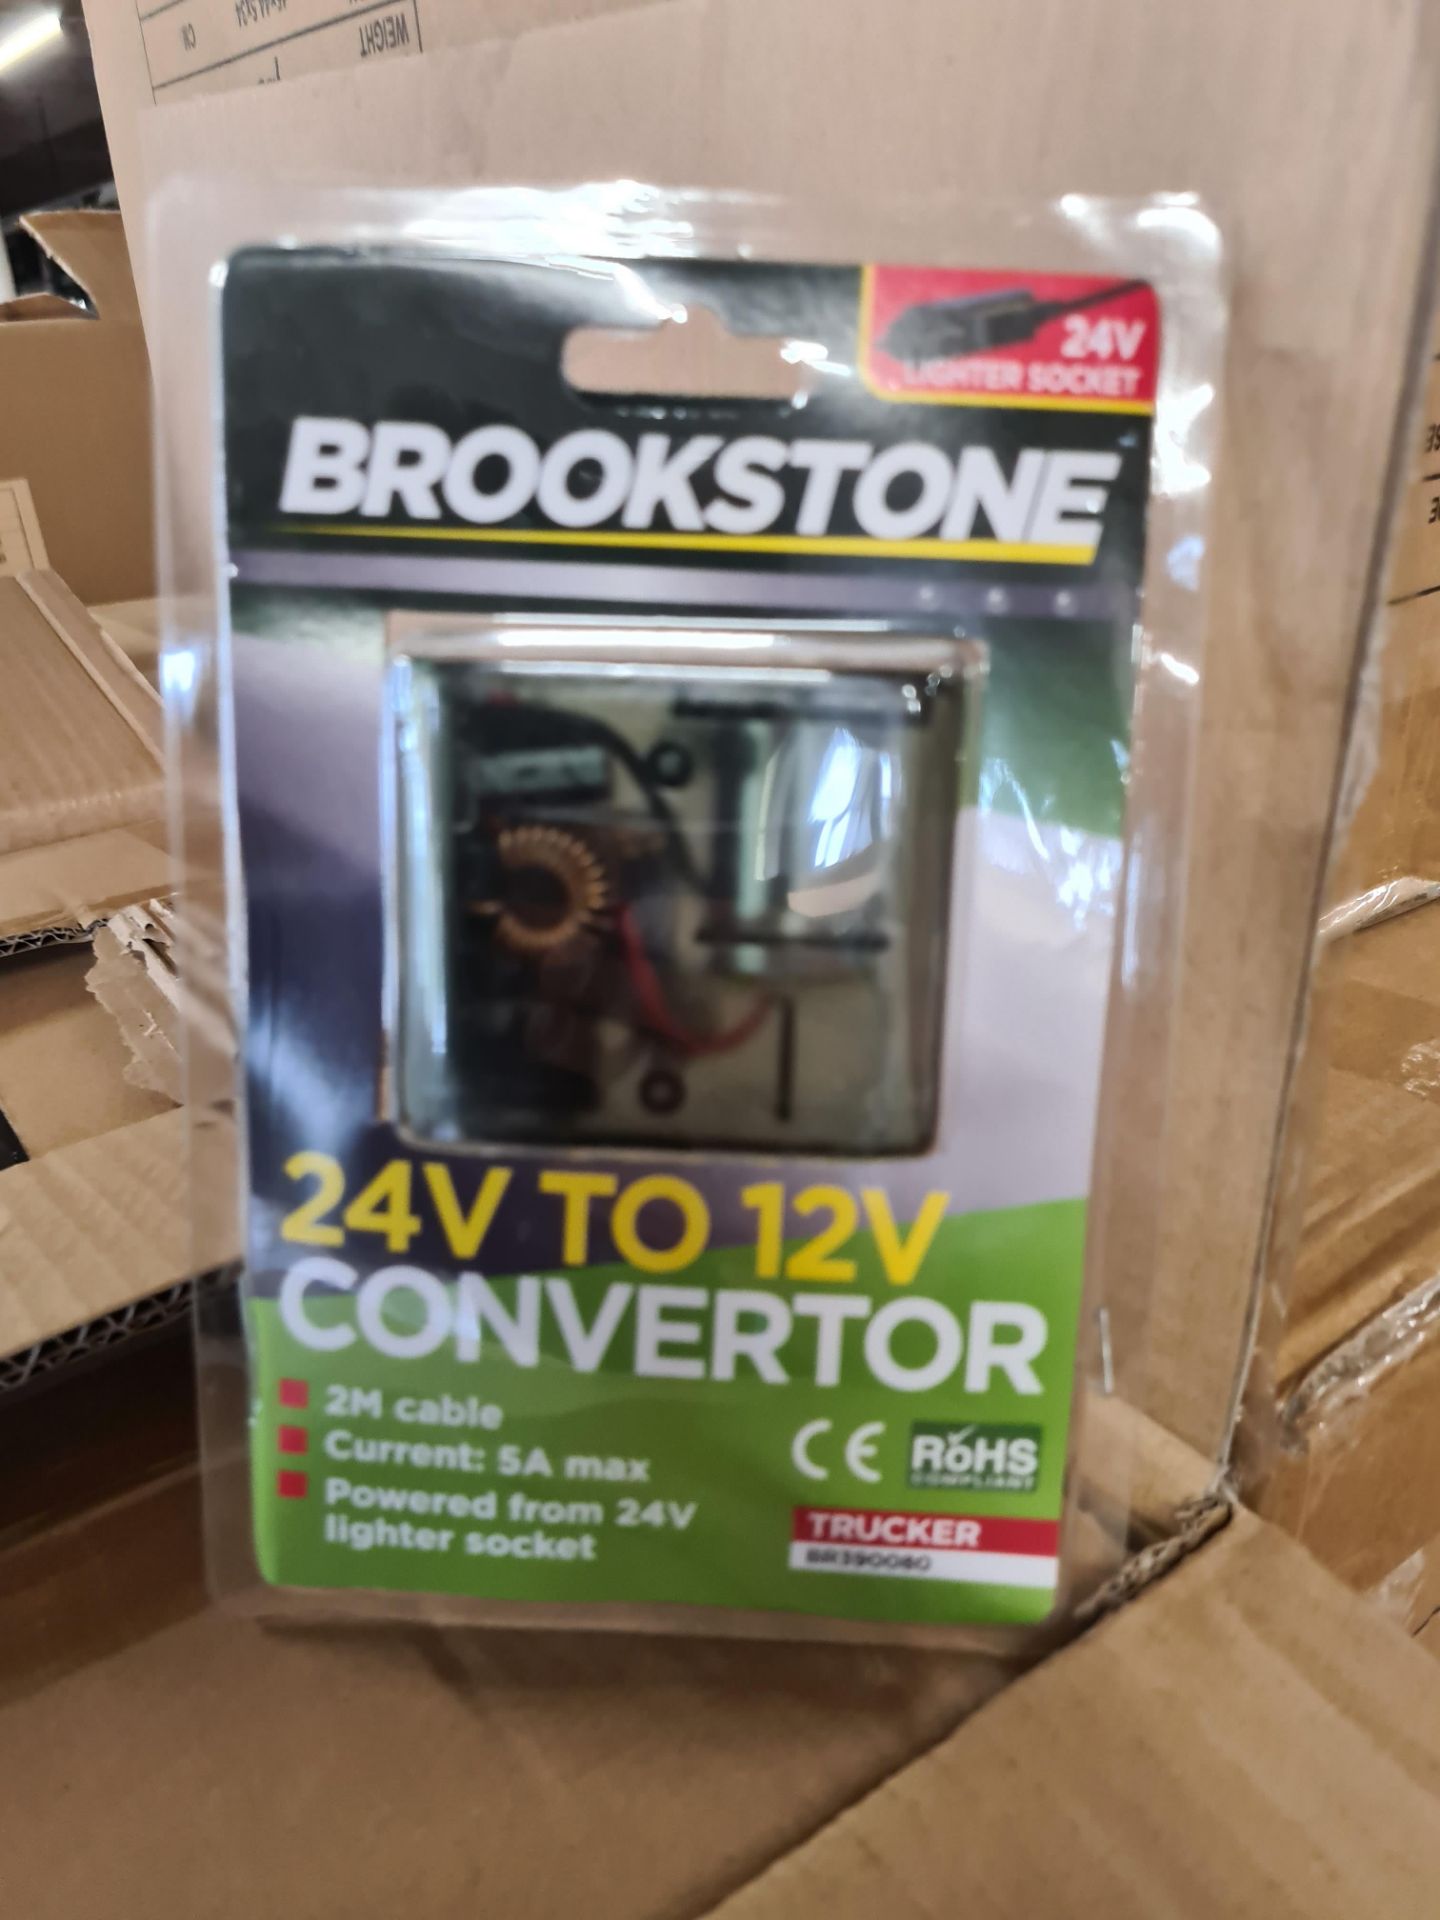 100 x Brookstone 12/24v Converter Kit | Total RRP £2,000